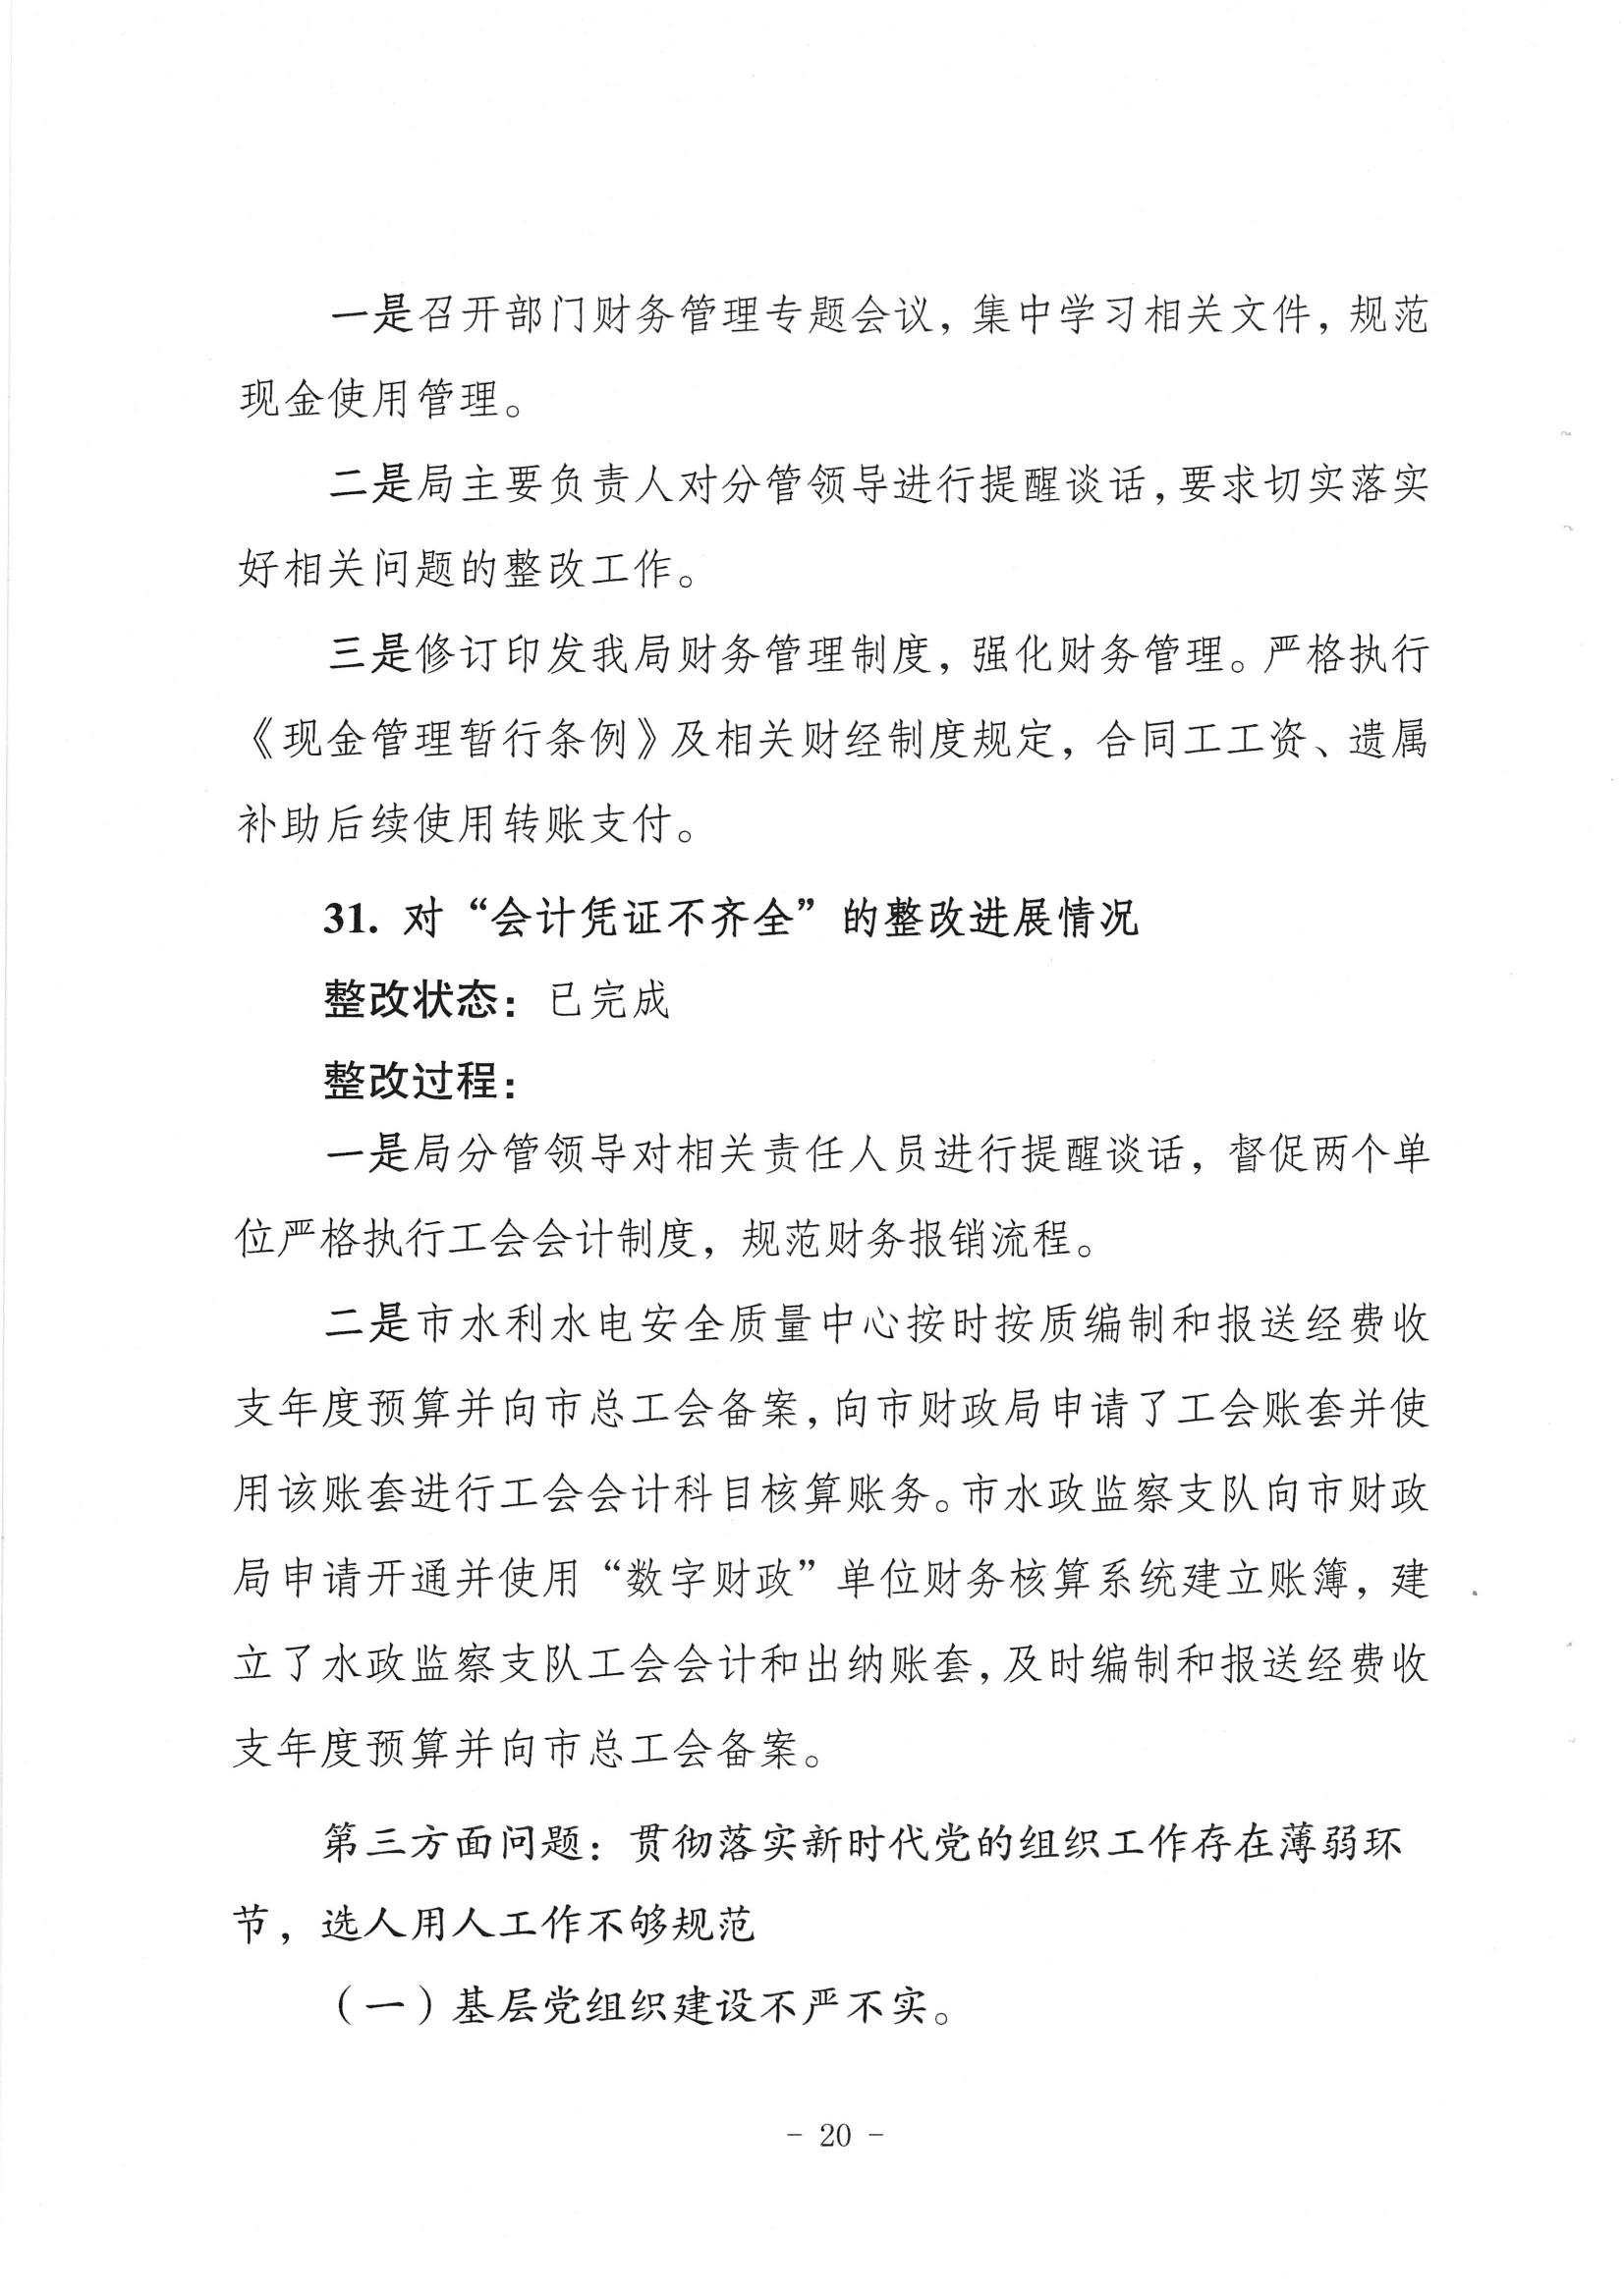 中共梅州市水务局党组关于落实八届市委第三轮巡察反馈意见的整改进展情况报告_19.jpg